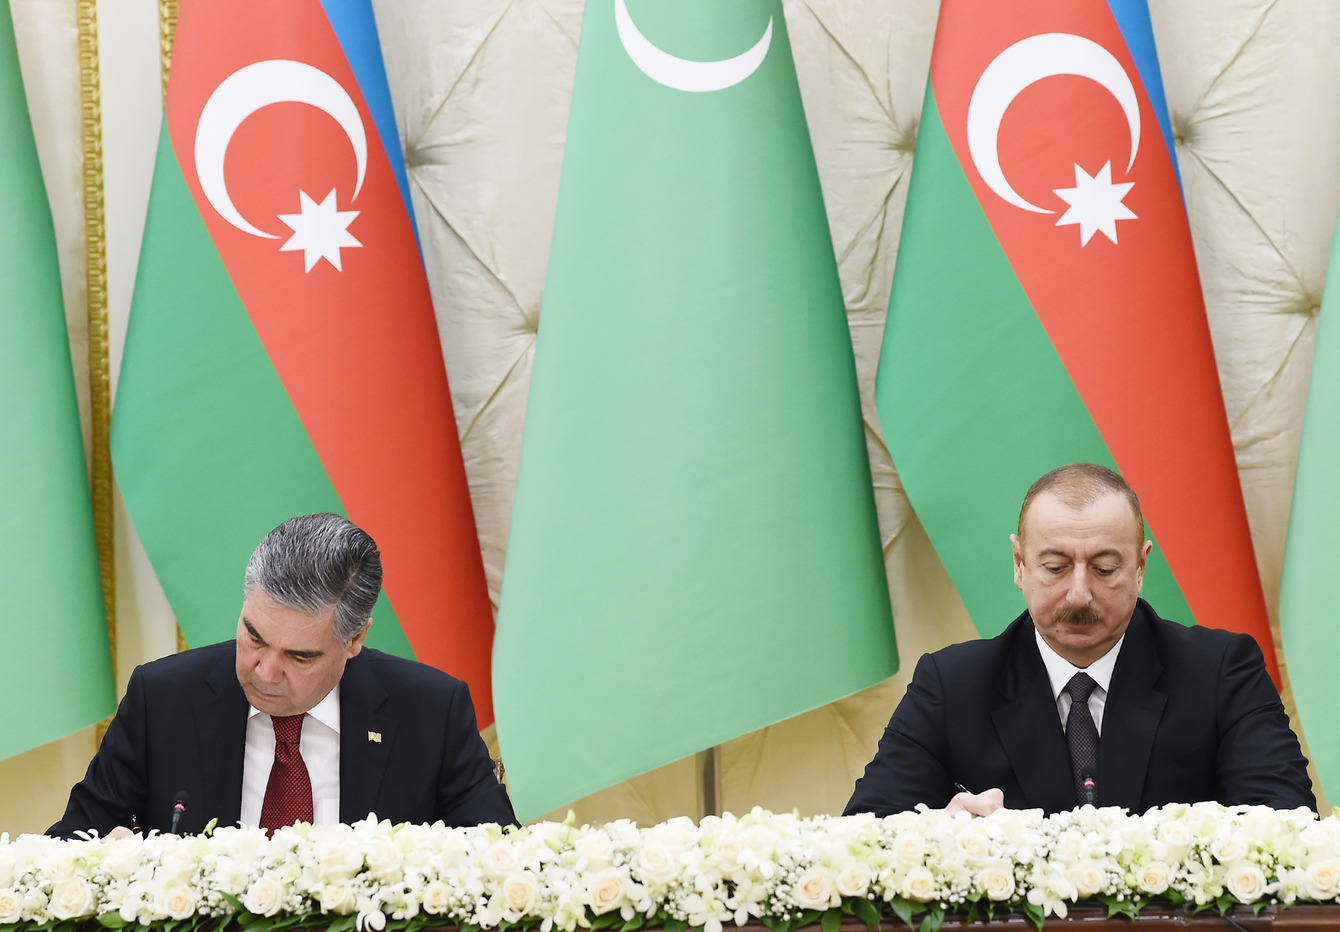 Президенты Туркмении и Азербайджана Гурбангулы Бердымухамедов и Ильхам Алиев подписывают соглашения на встрече 11 марта 2020 года в Баку